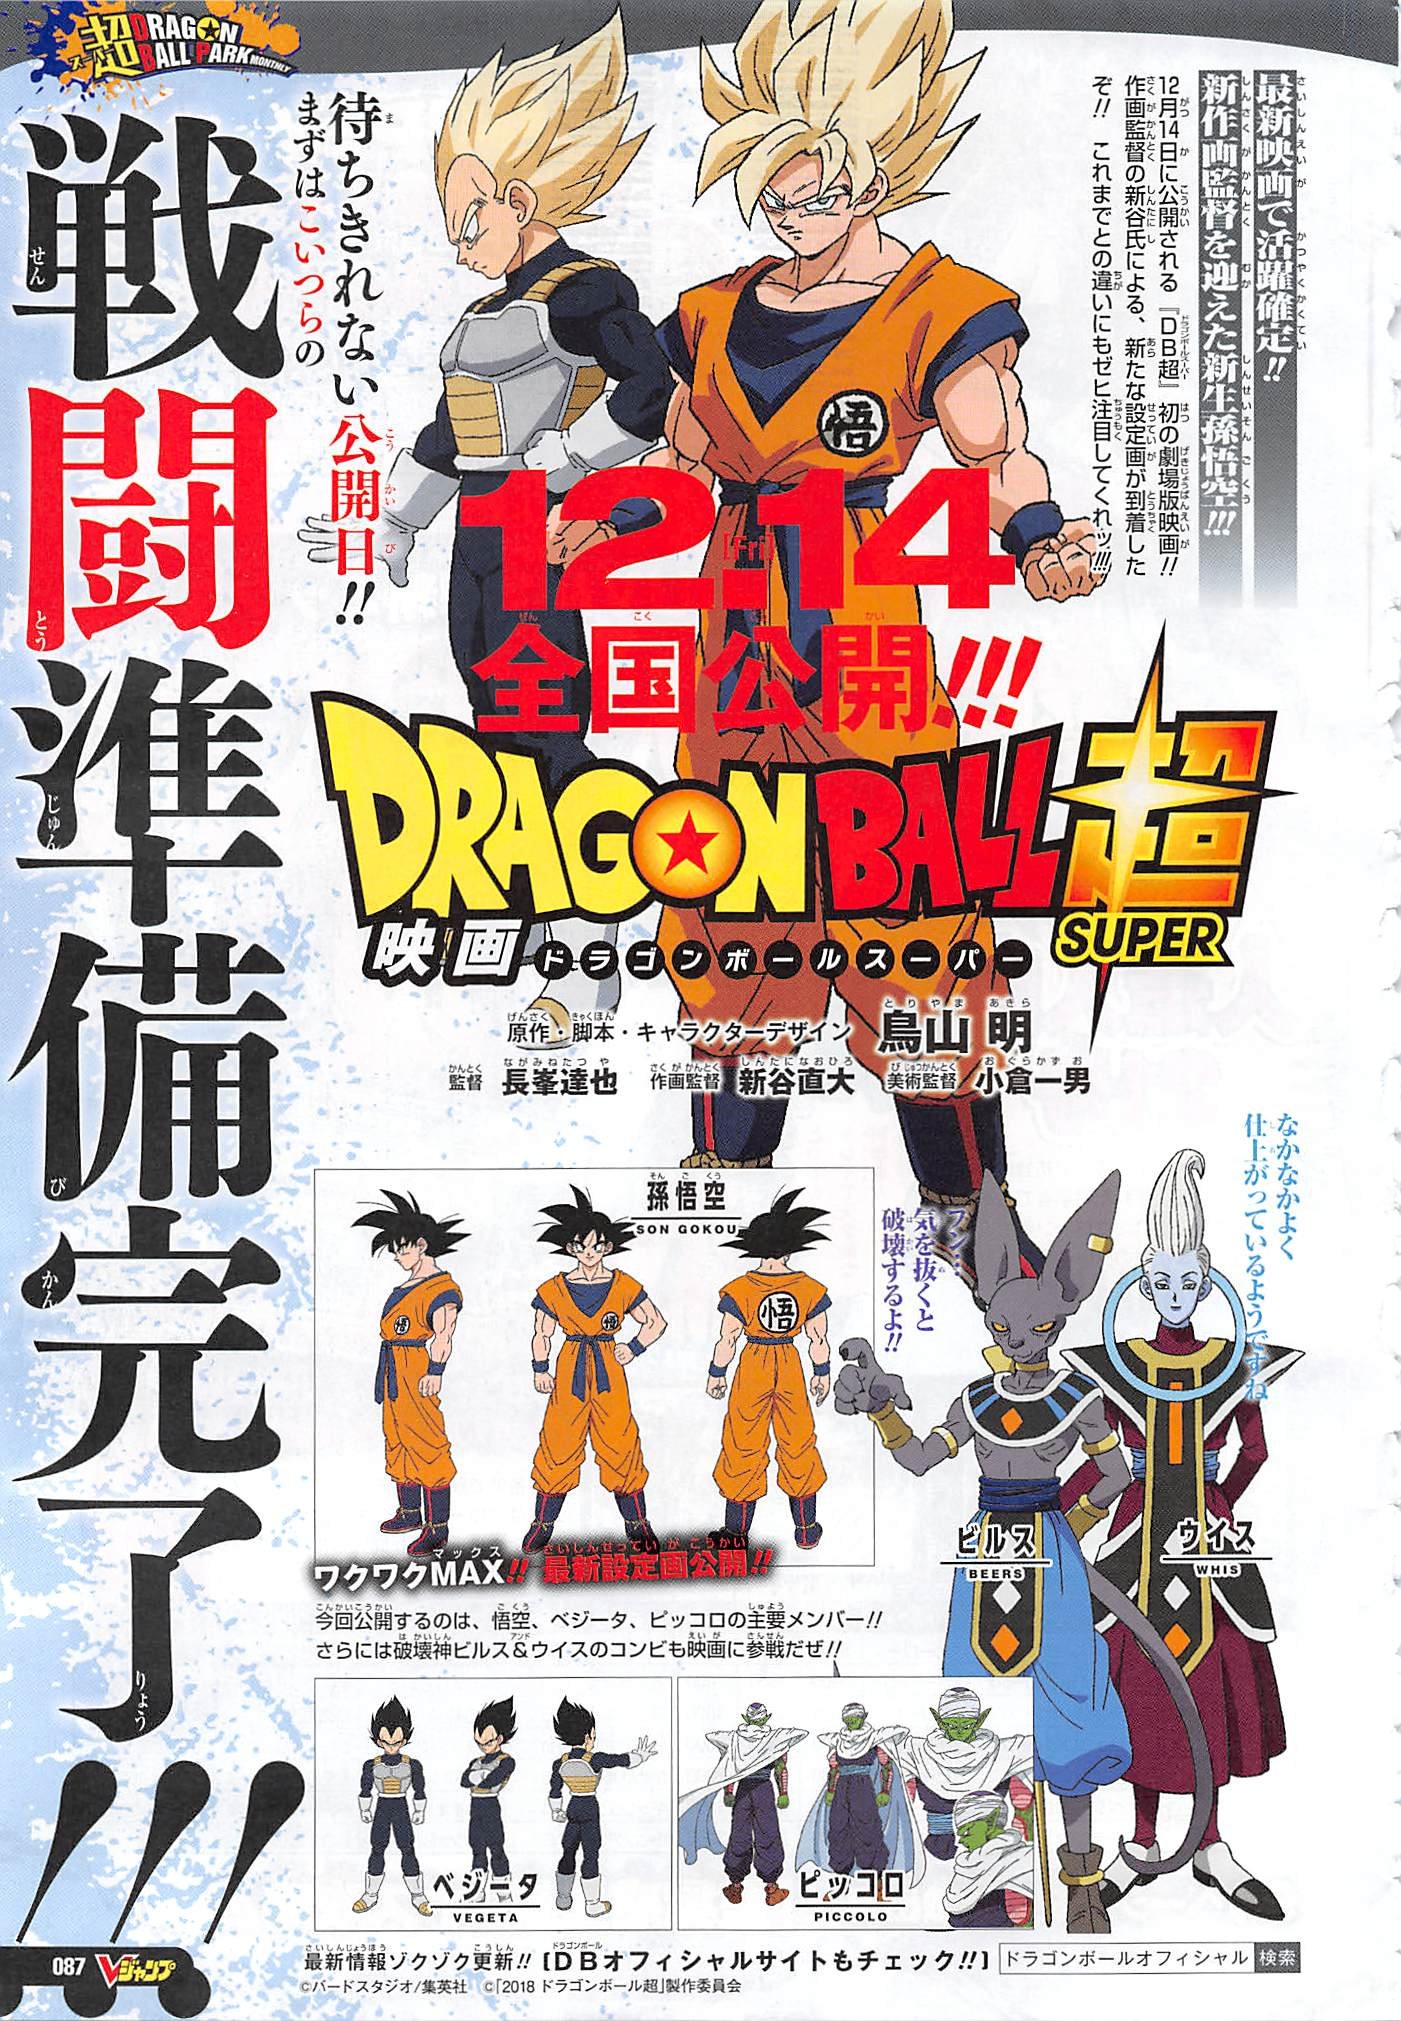 Sinopse revela detalhes inéditos de Dragon Ball Super: Broly